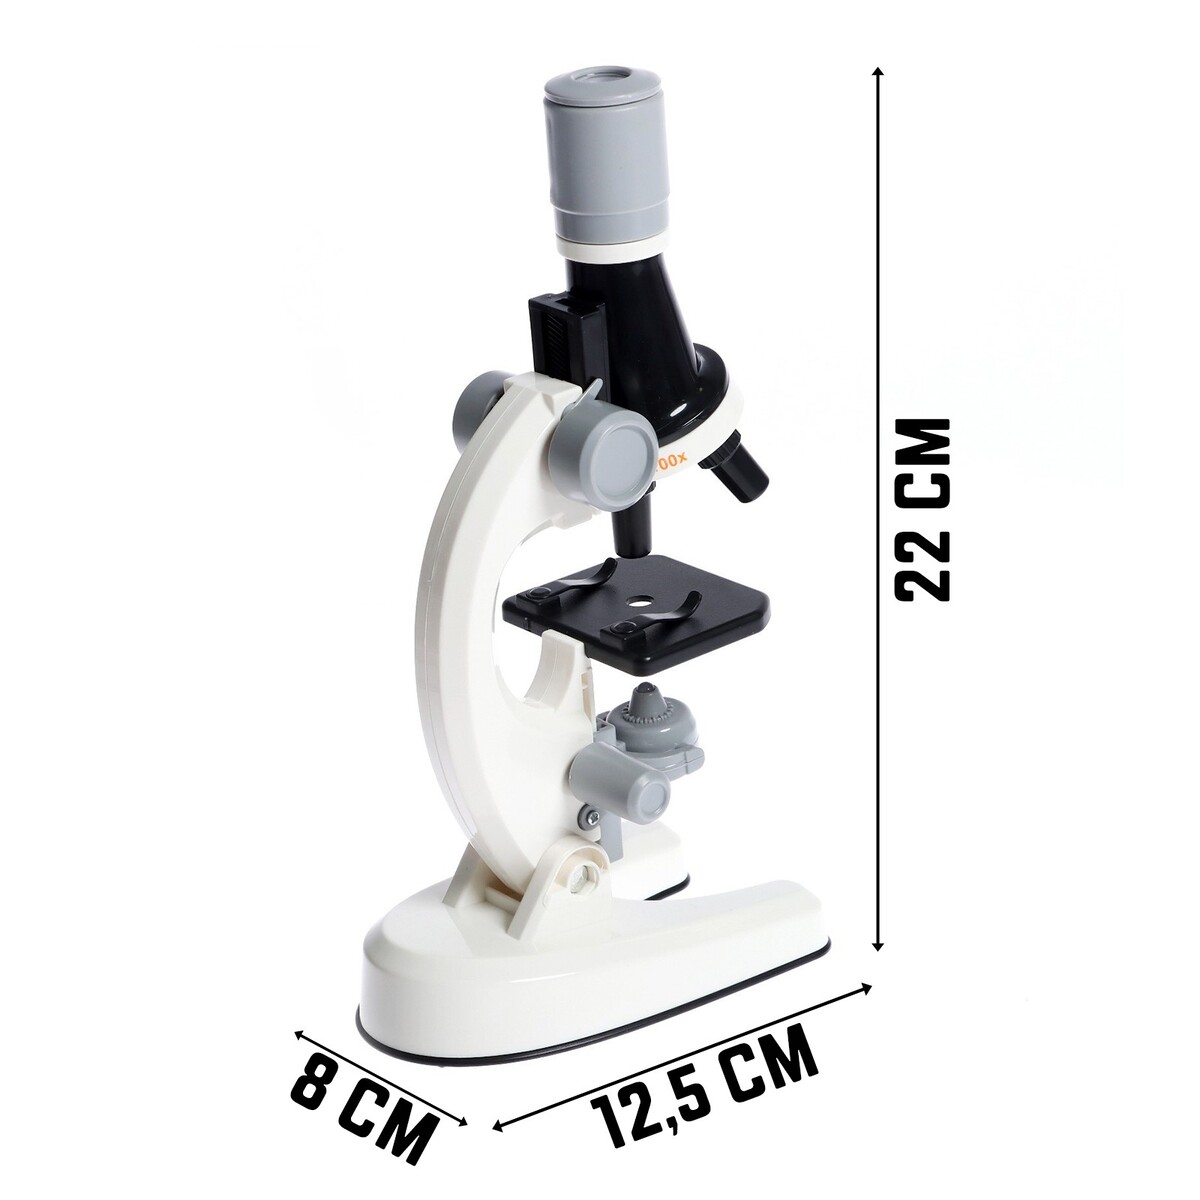 Микроскоп детский микроскоп эврики детский с набором для исследований свет микс sl 0078 арт 1629483